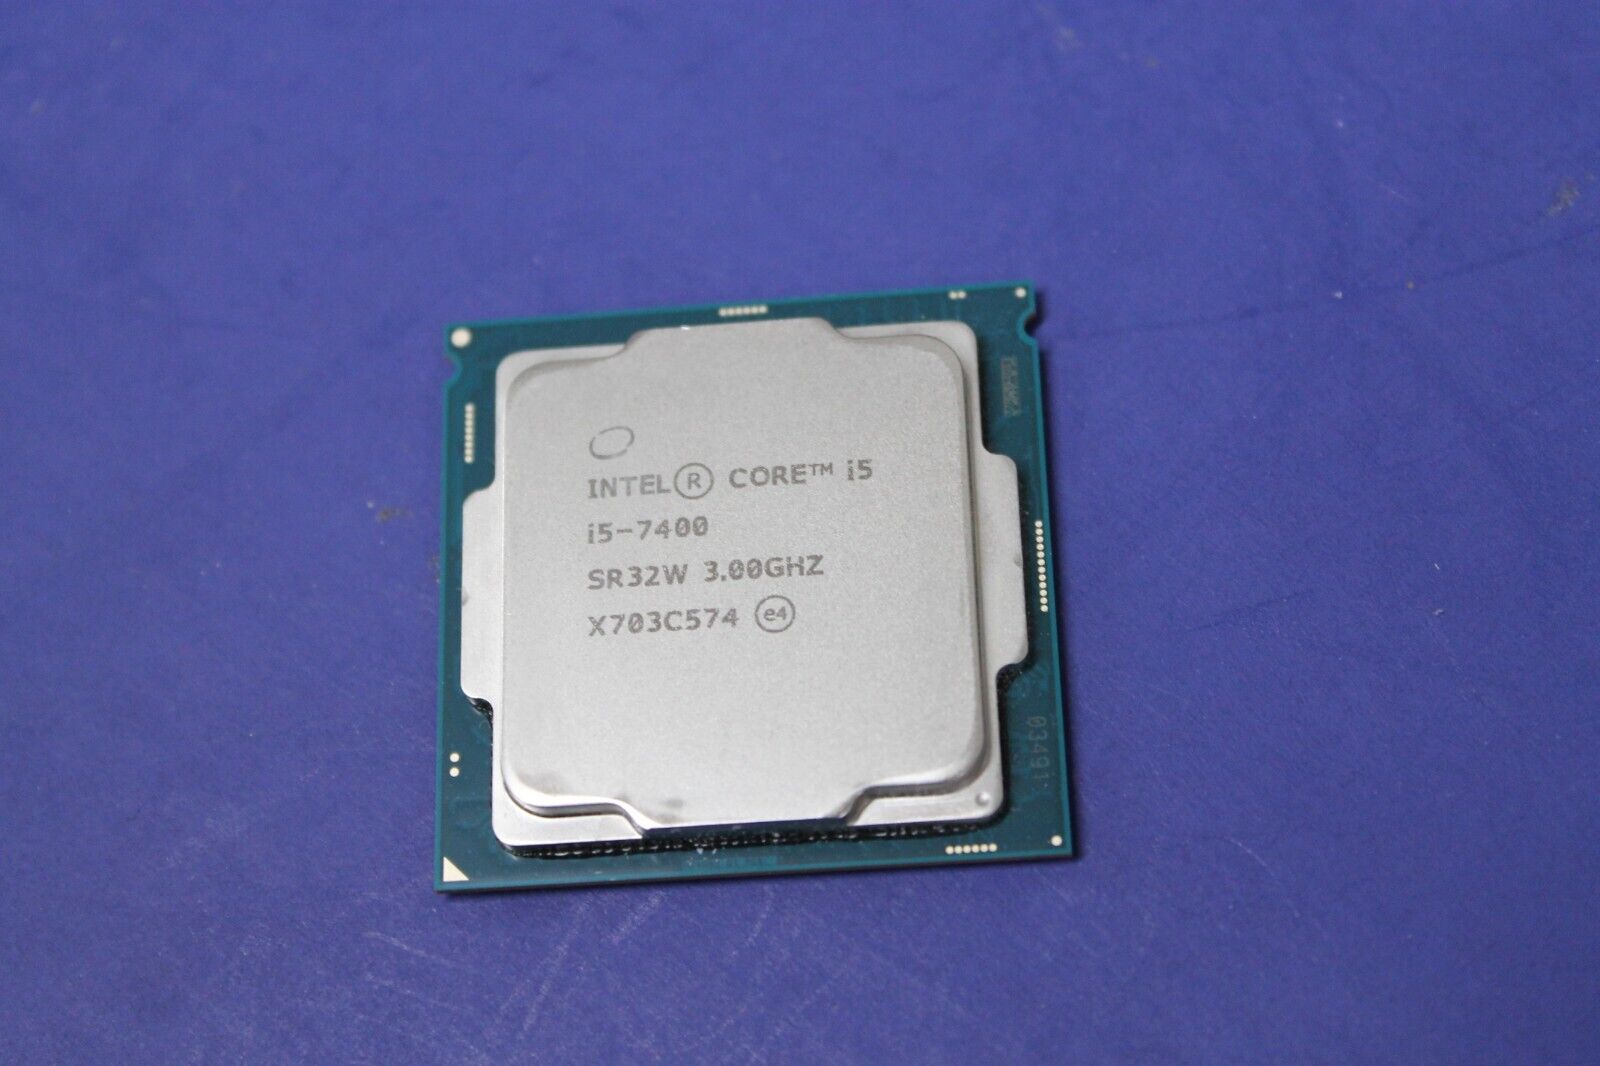 Intel Core i5-7400 3.00GHz SR32W Processor Socket 1151 Quad Core Desktop CPU